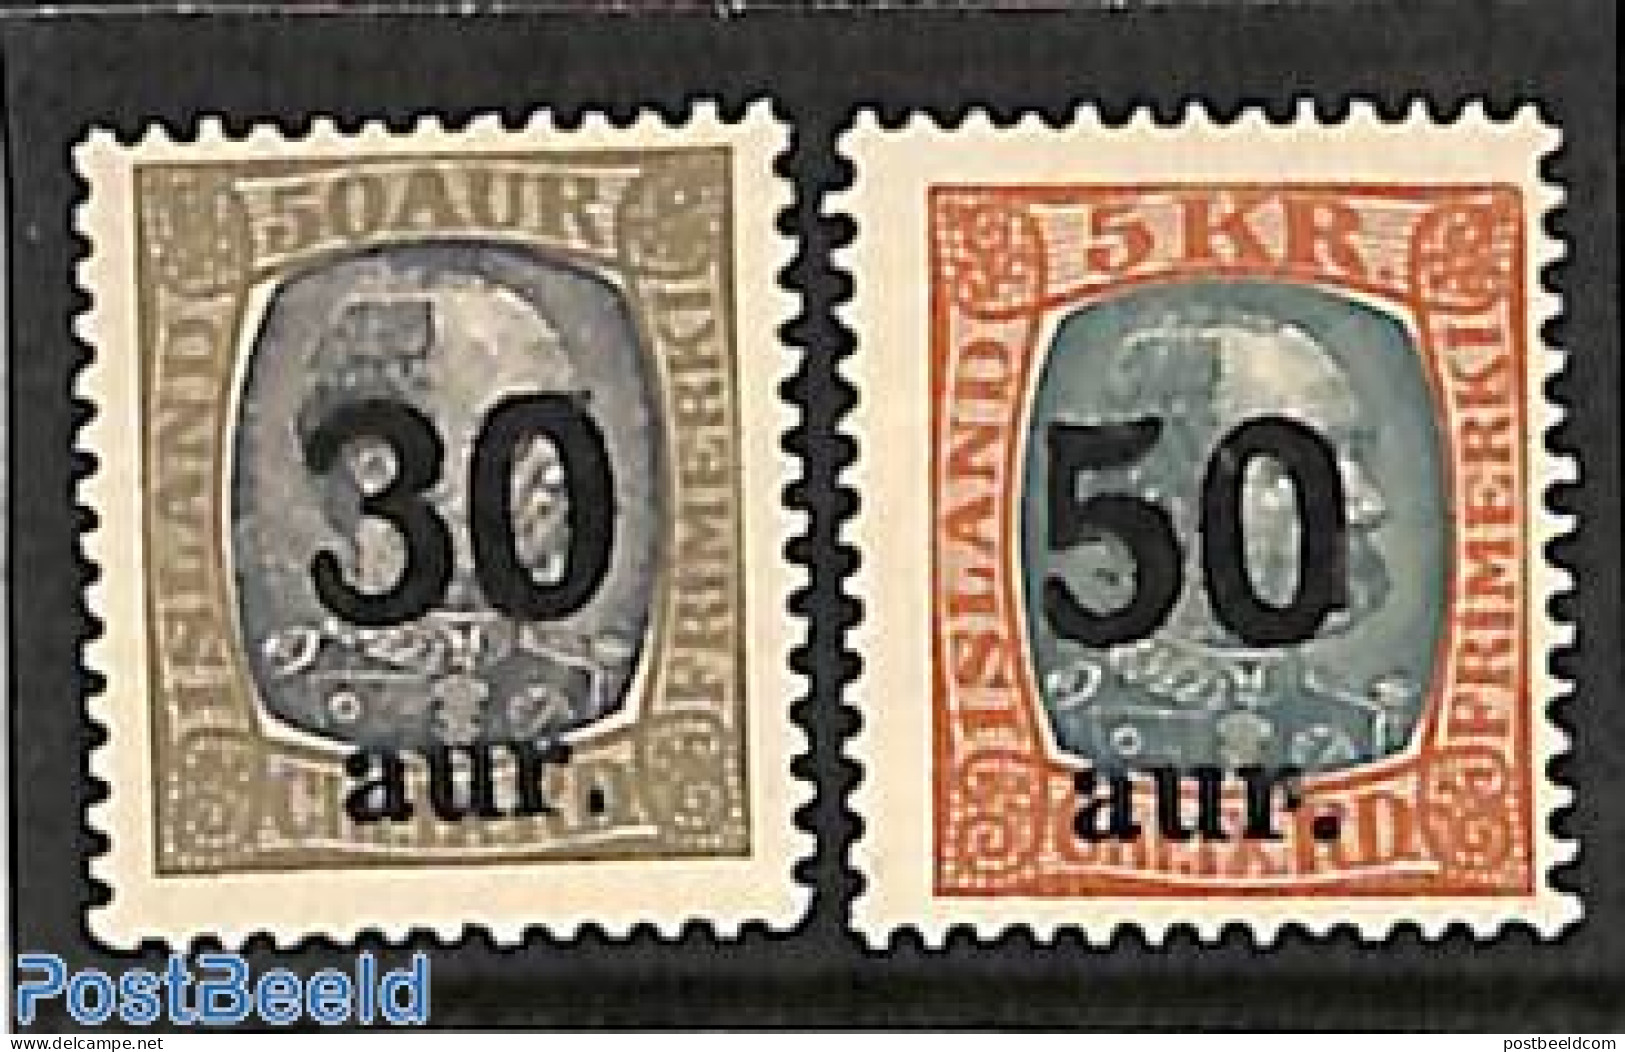 Iceland 1925 Overprints 2v, Unused (hinged) - Unused Stamps